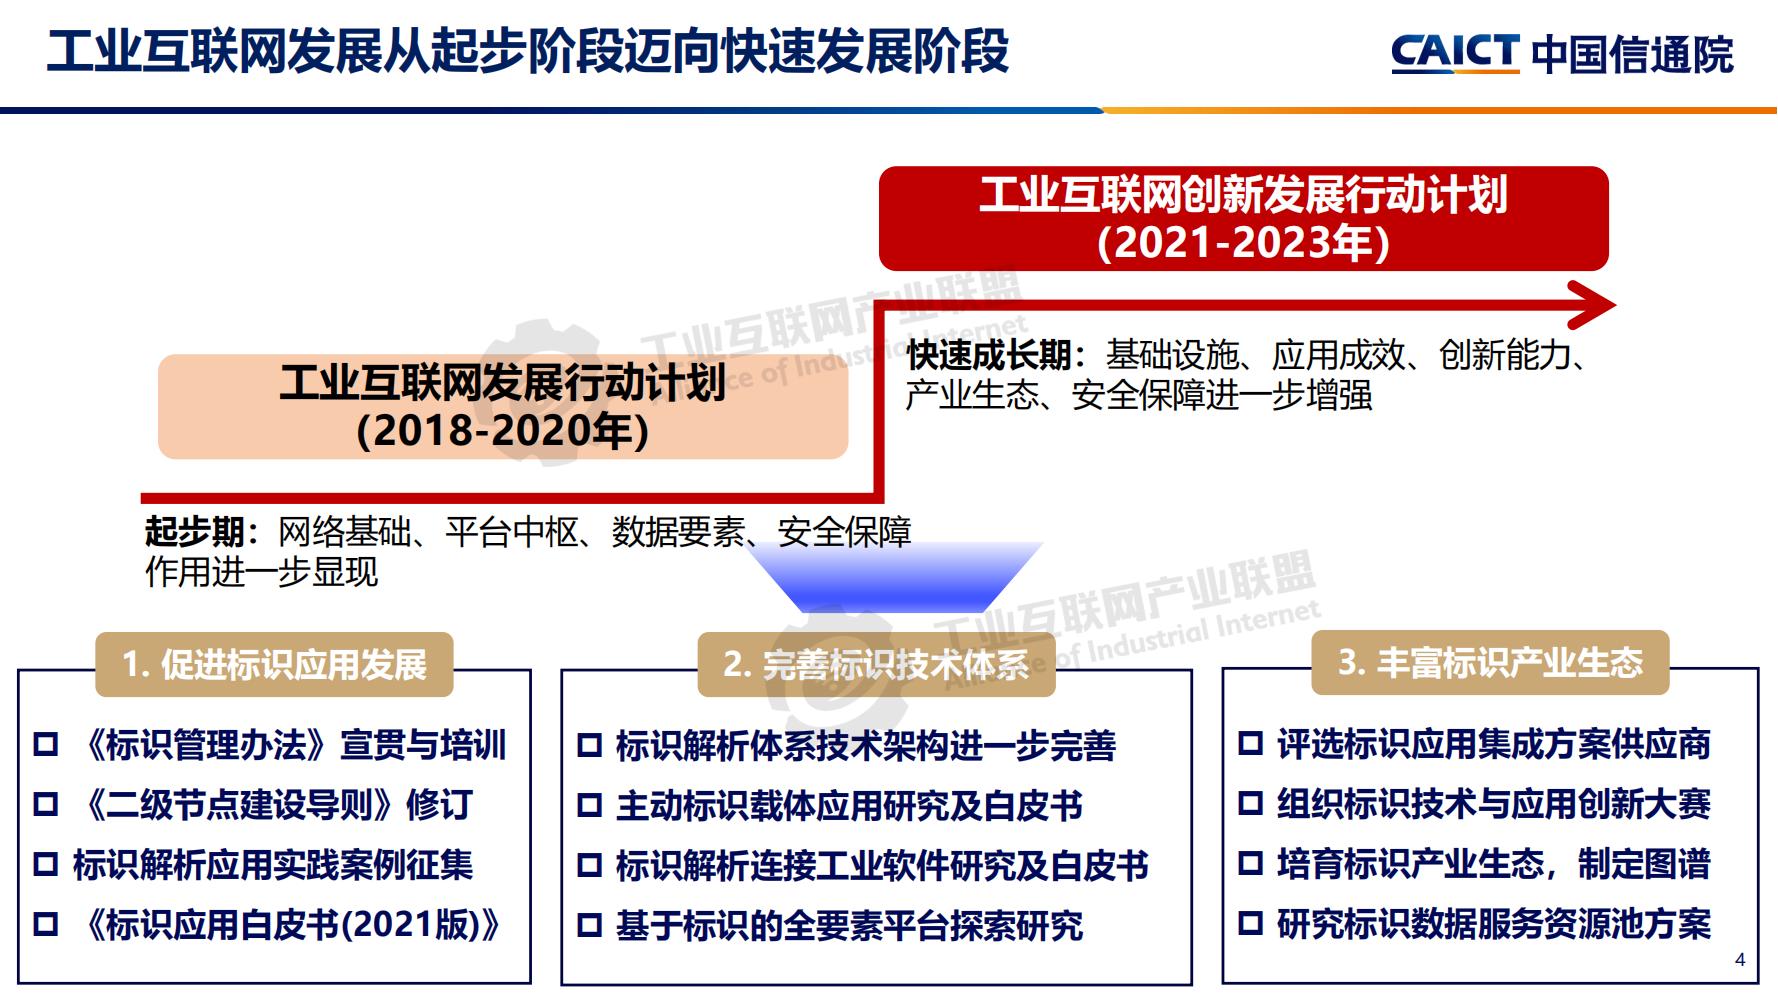 4-betway体育亚洲版入口标识解析体系建设进展（深圳）12-16(1)-水印_03.jpg